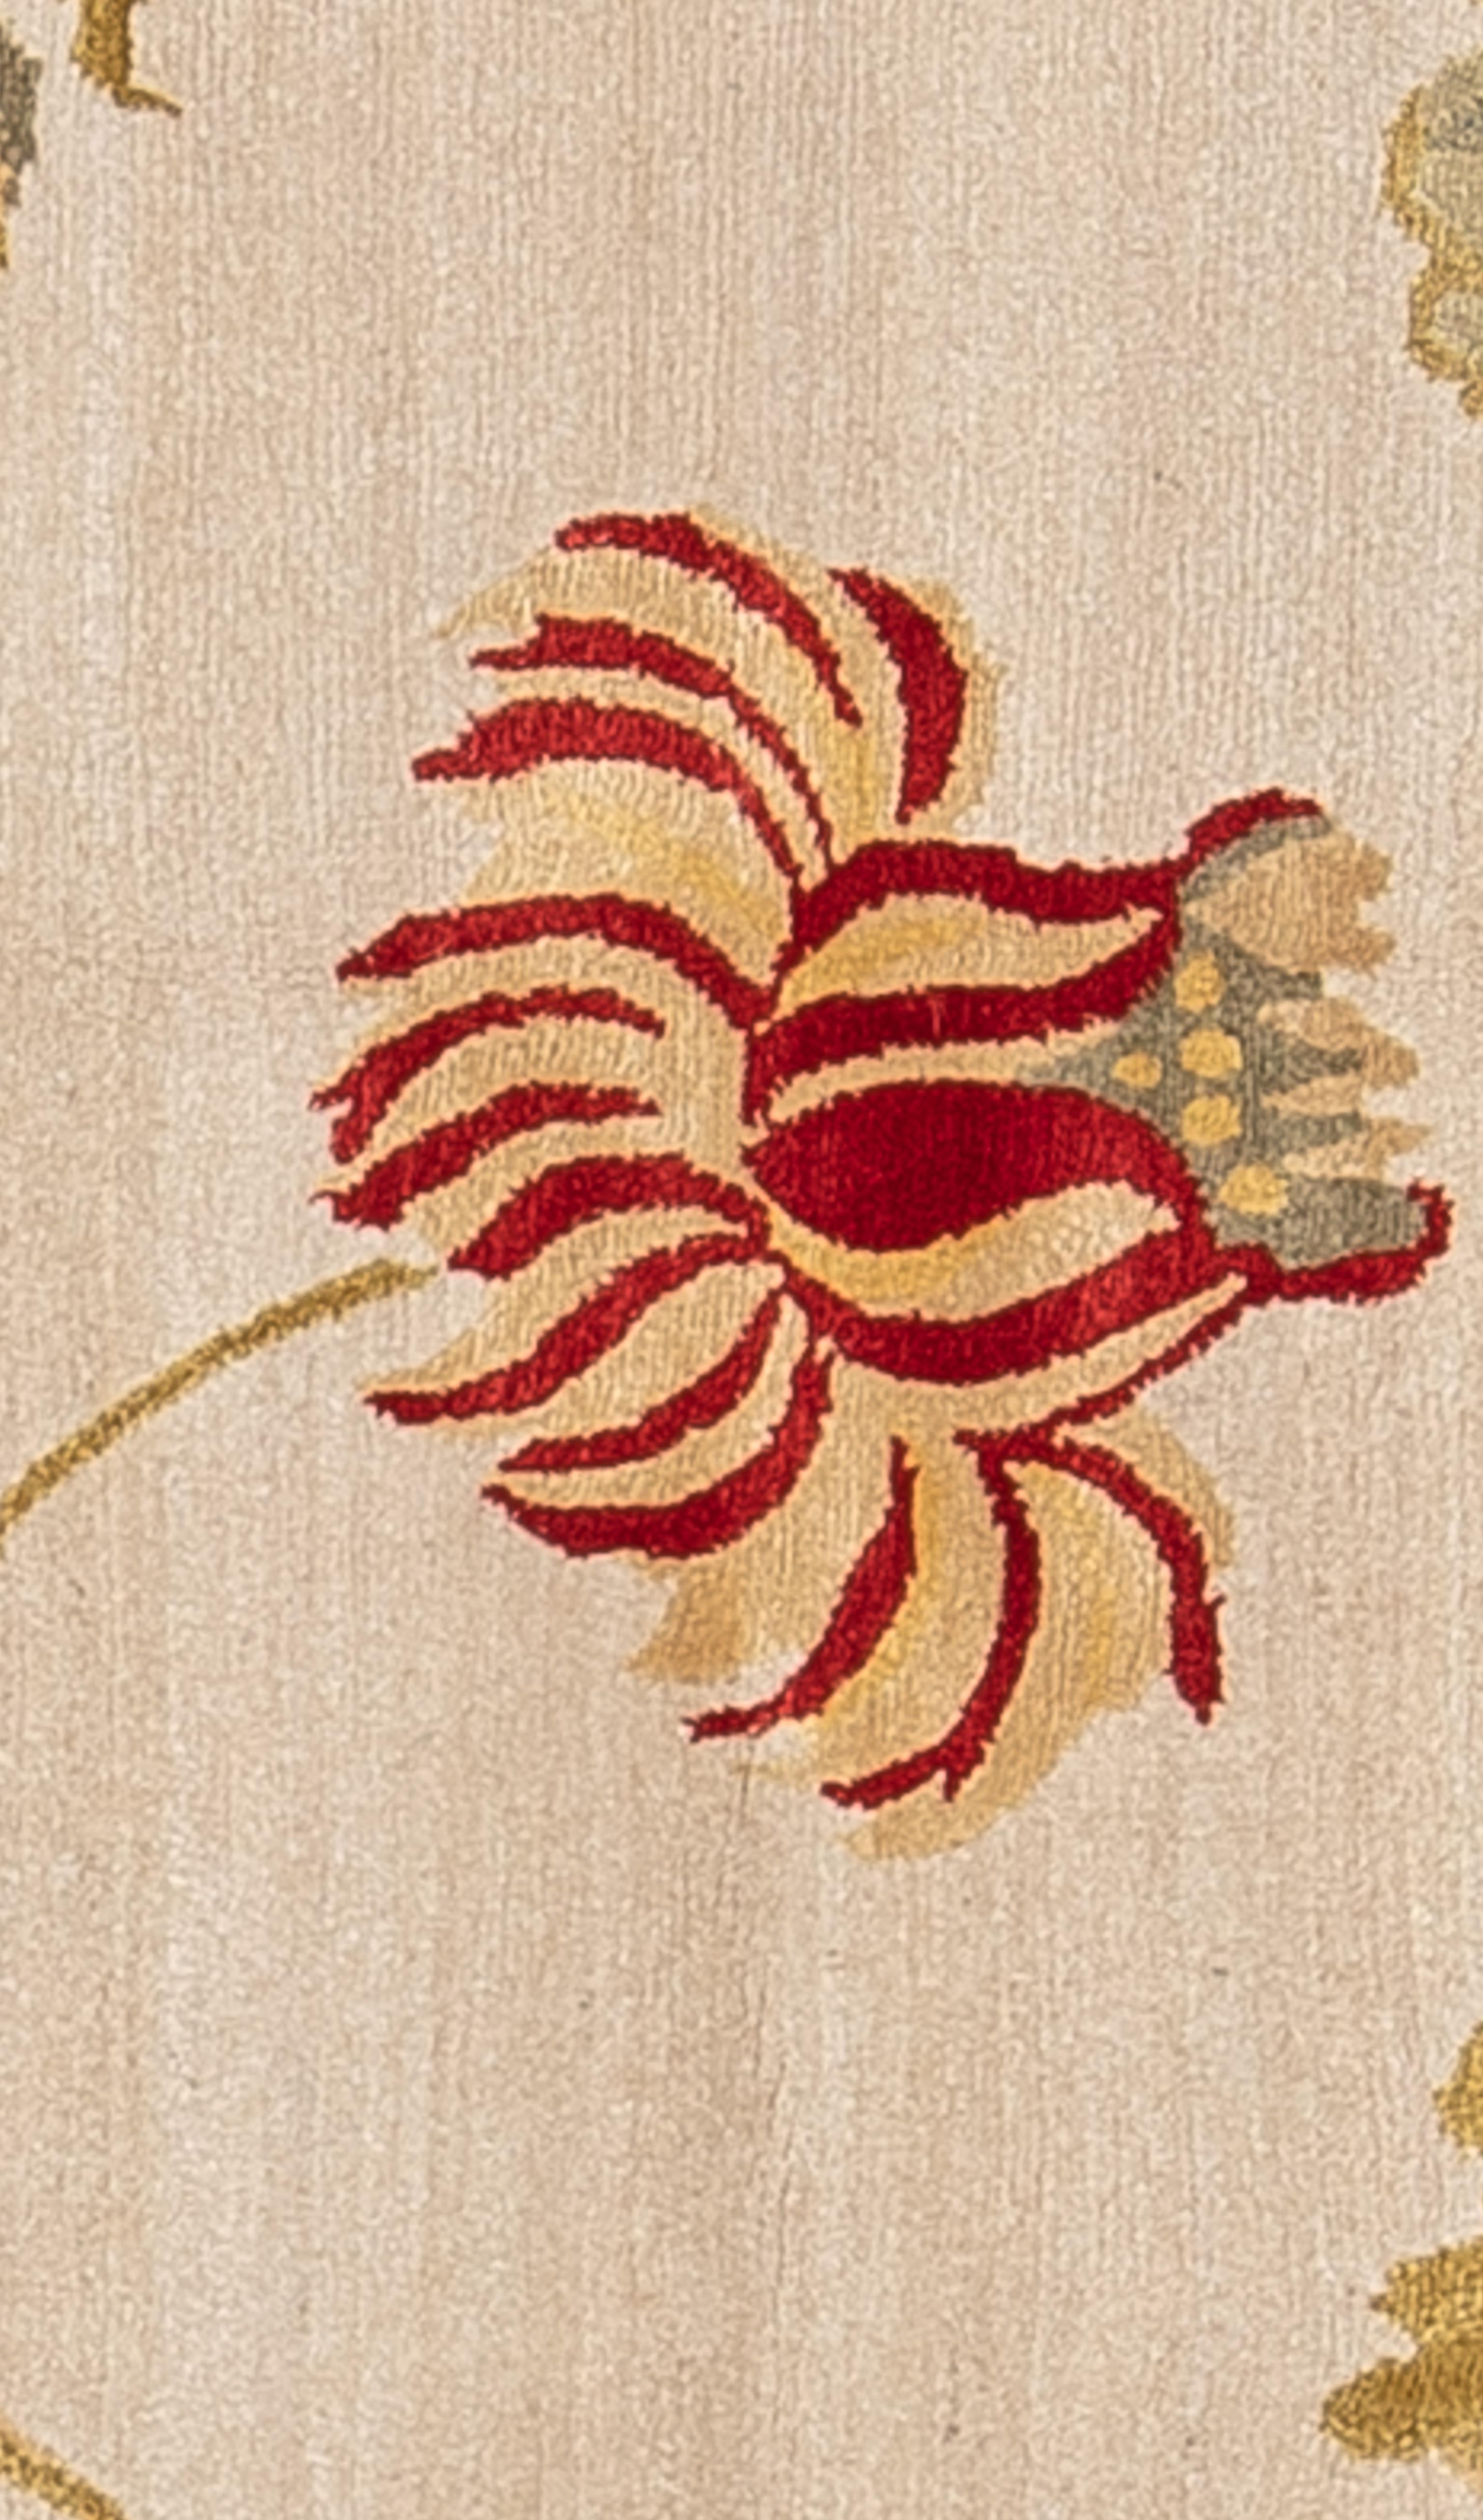 Dieser handgewebte Stammesteppich im Übergangsstil zeigt ein wunderschönes mehrfarbiges Motiv im hawaiianischen Stil auf einem elfenbeinfarbenen Feld.

Größe - 6' x 9'
Farbe - Mehrfarbig
Typ - Übergangsweise

**Zertifiziert und anerkannt als